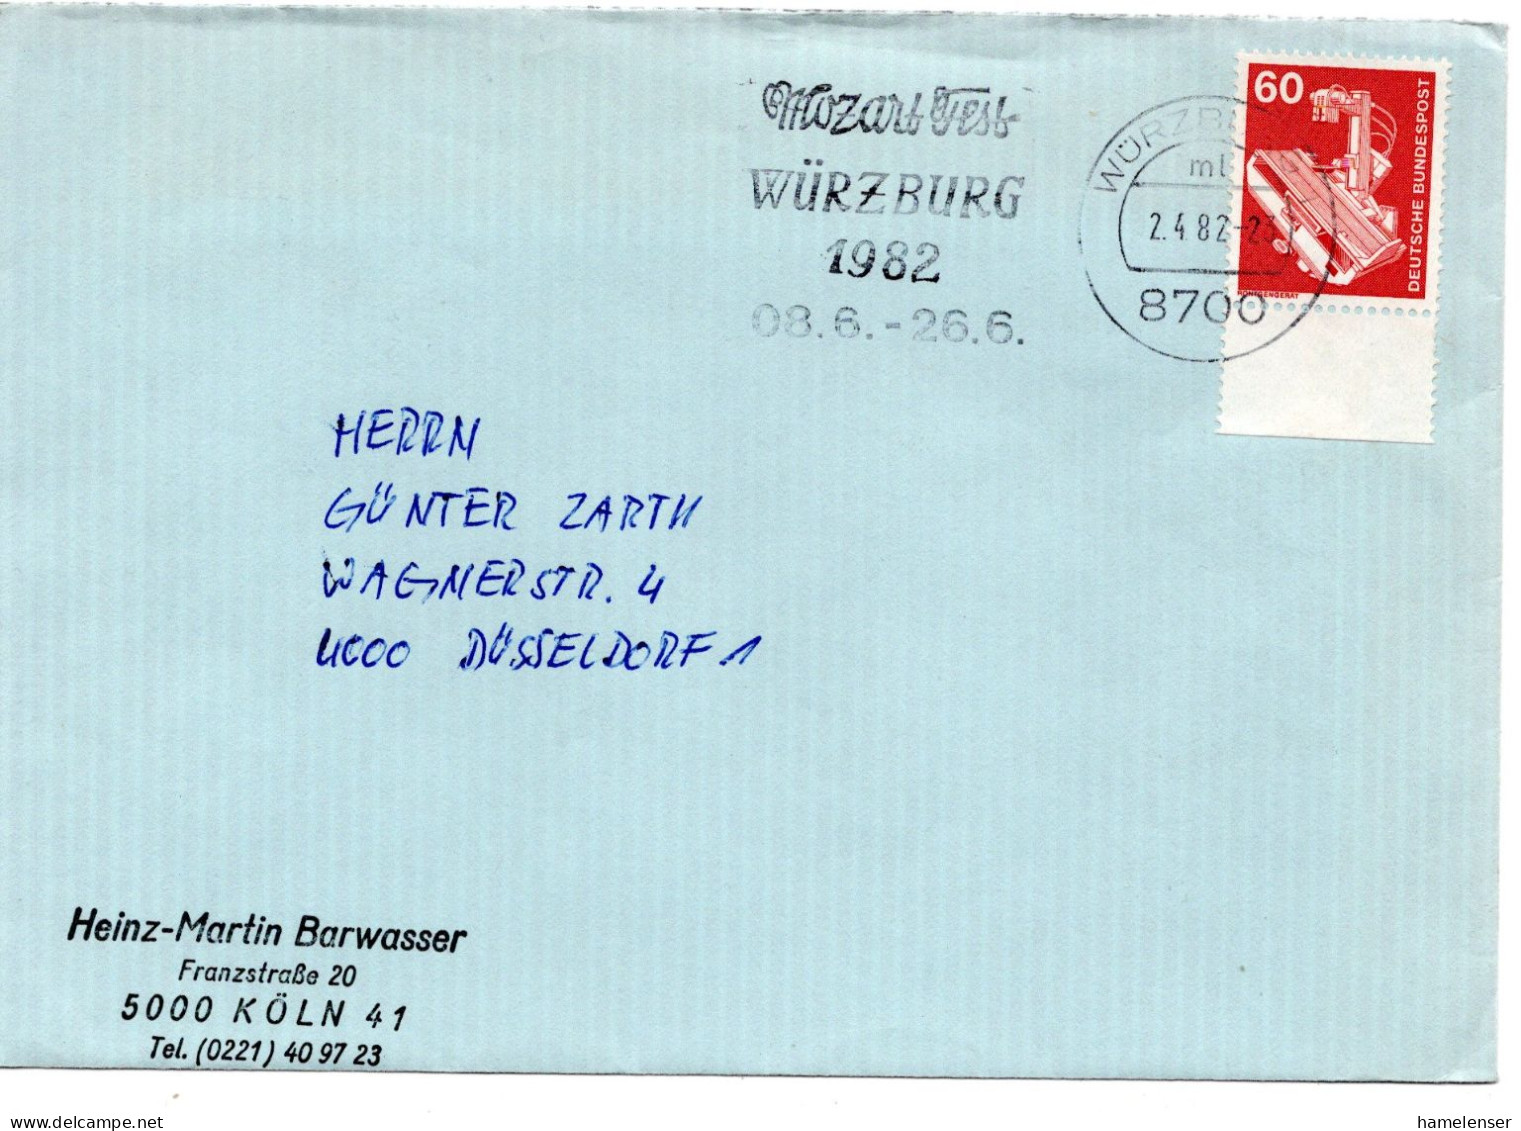 63007 - Bund - 1982 - 60Pfg I&T EF A Bf WUERZBURG - MOZART-FEST ... -> Duesseldorf - Musik